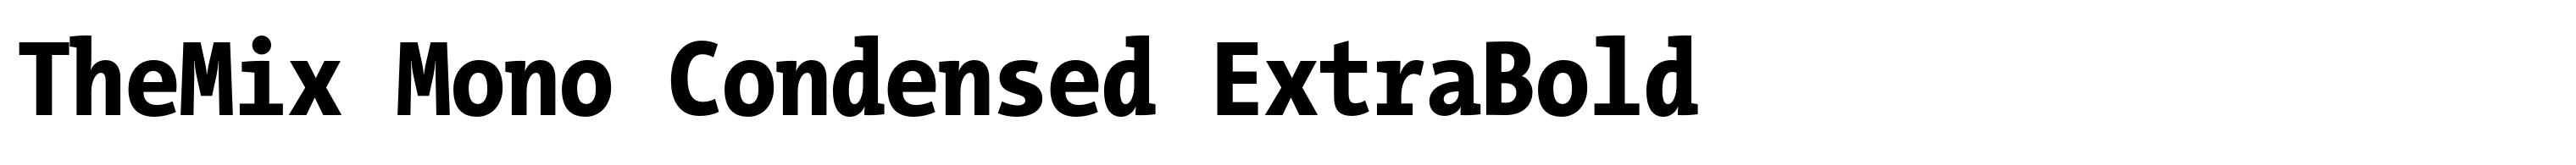 TheMix Mono Condensed ExtraBold